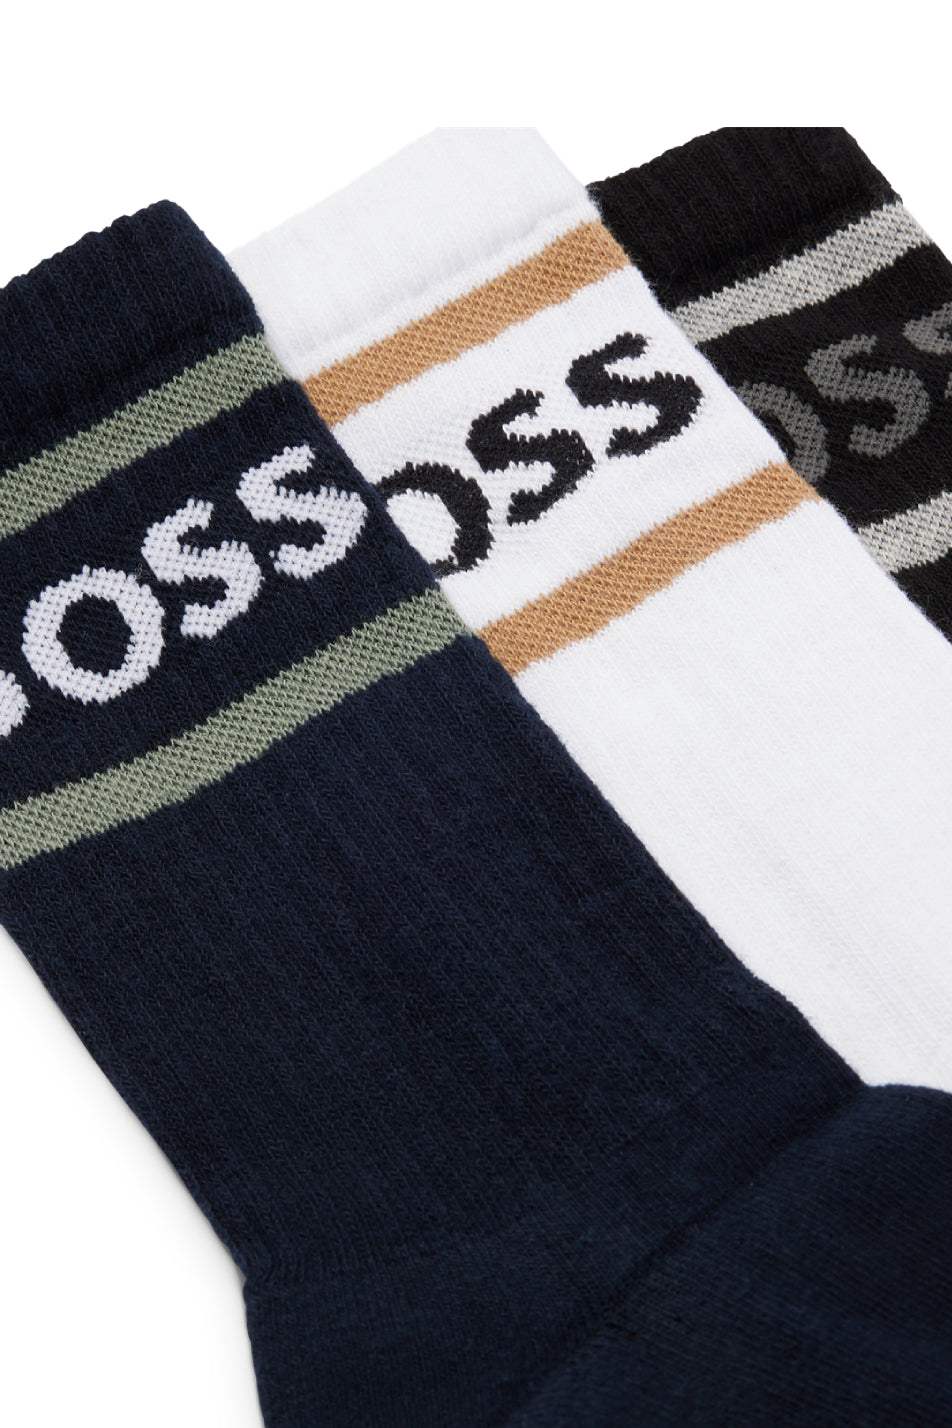 BOSS 3 Pack Men's Rib Stripe Sock